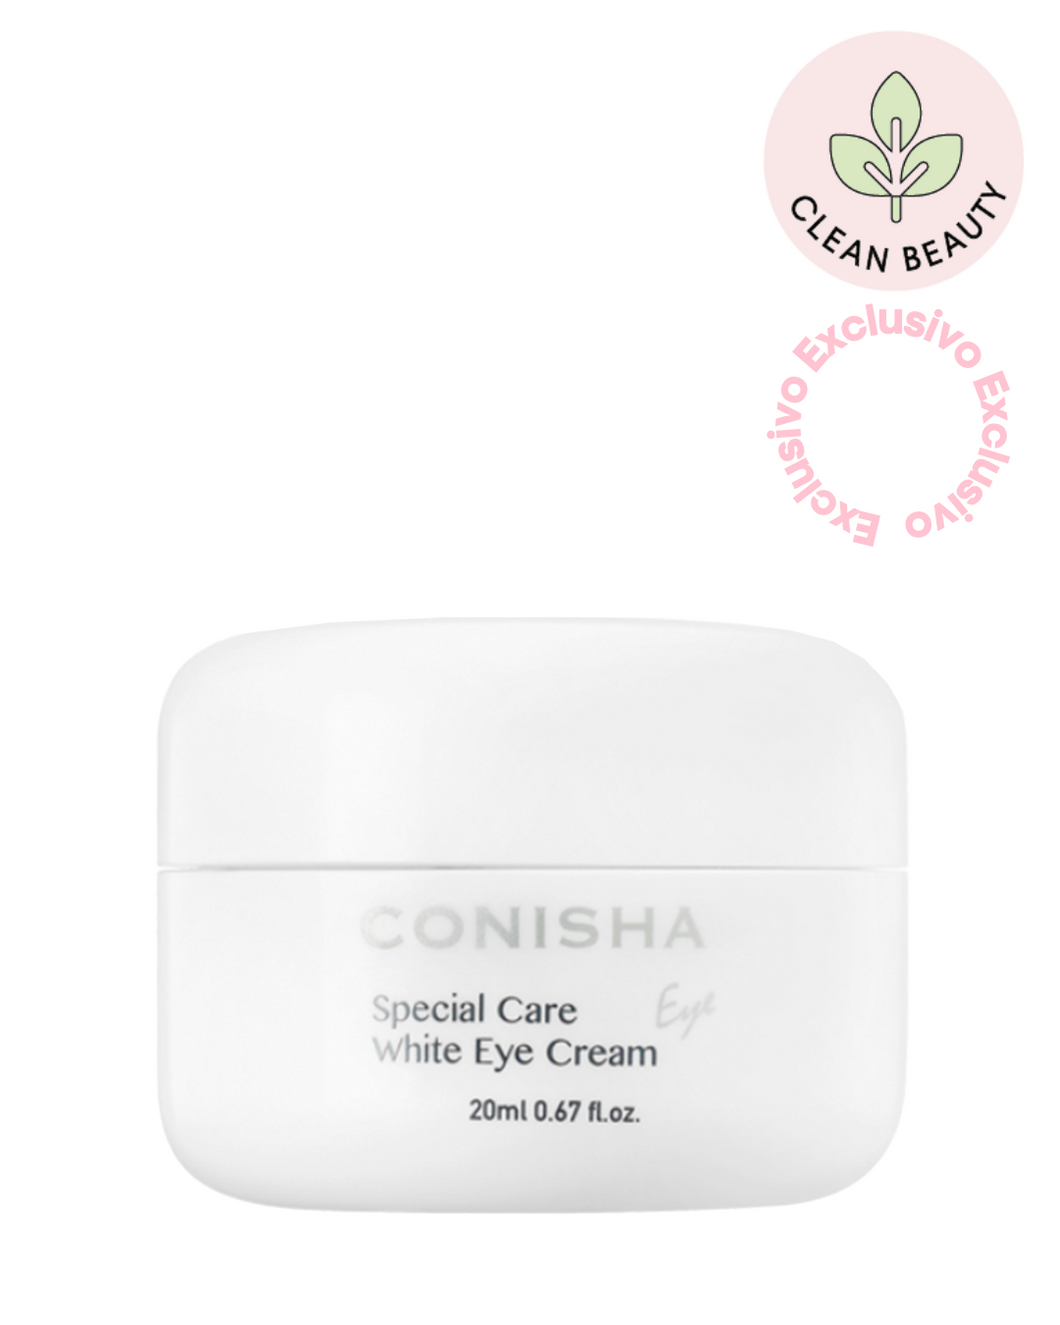 CONISHA -Special Care White Eye Cream 20ml